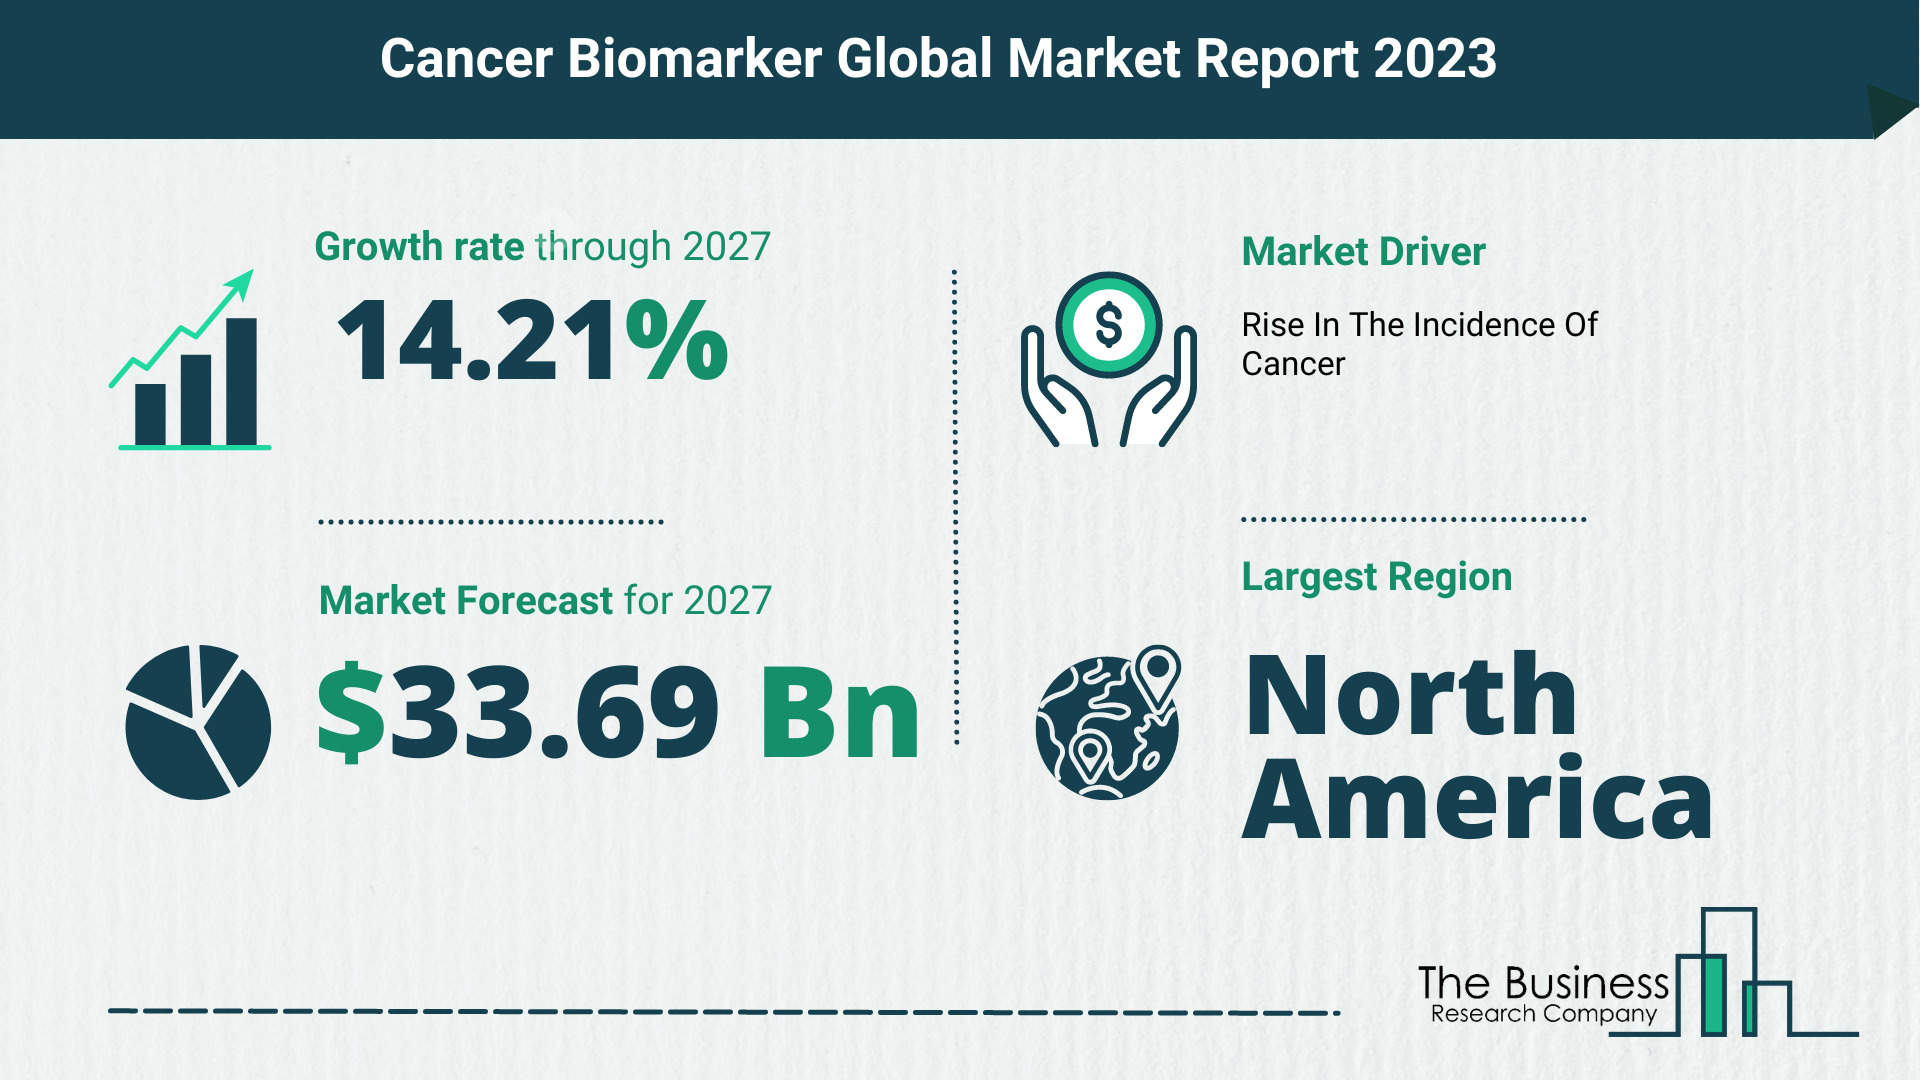 Global Cancer Biomarker Market Size